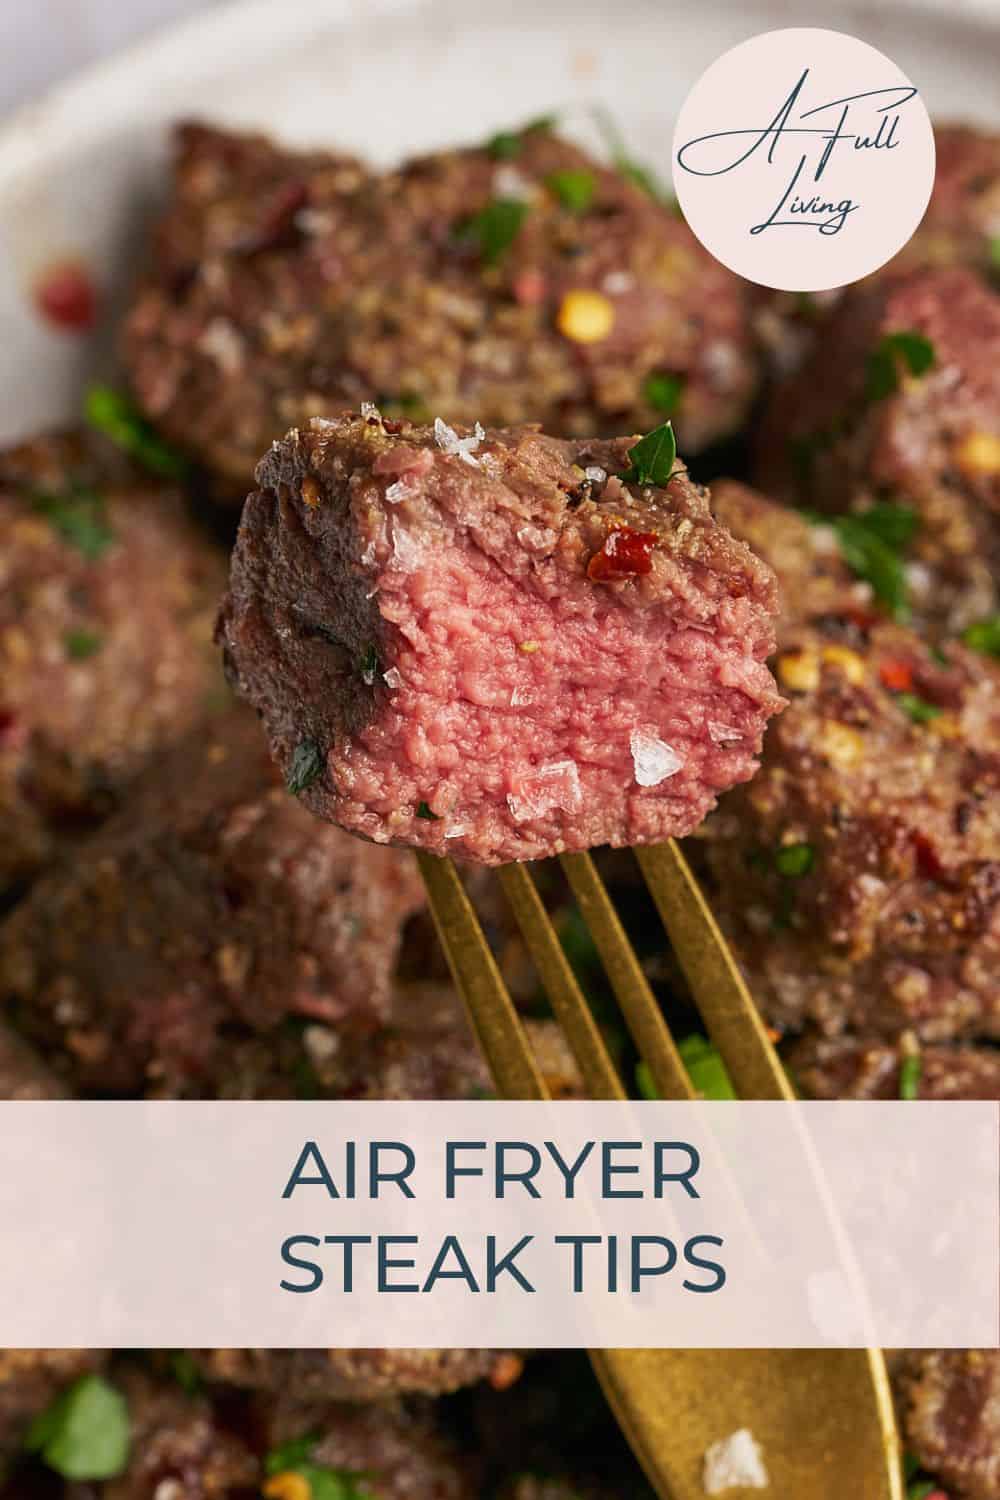 Air fryer steak tips pinterest image.